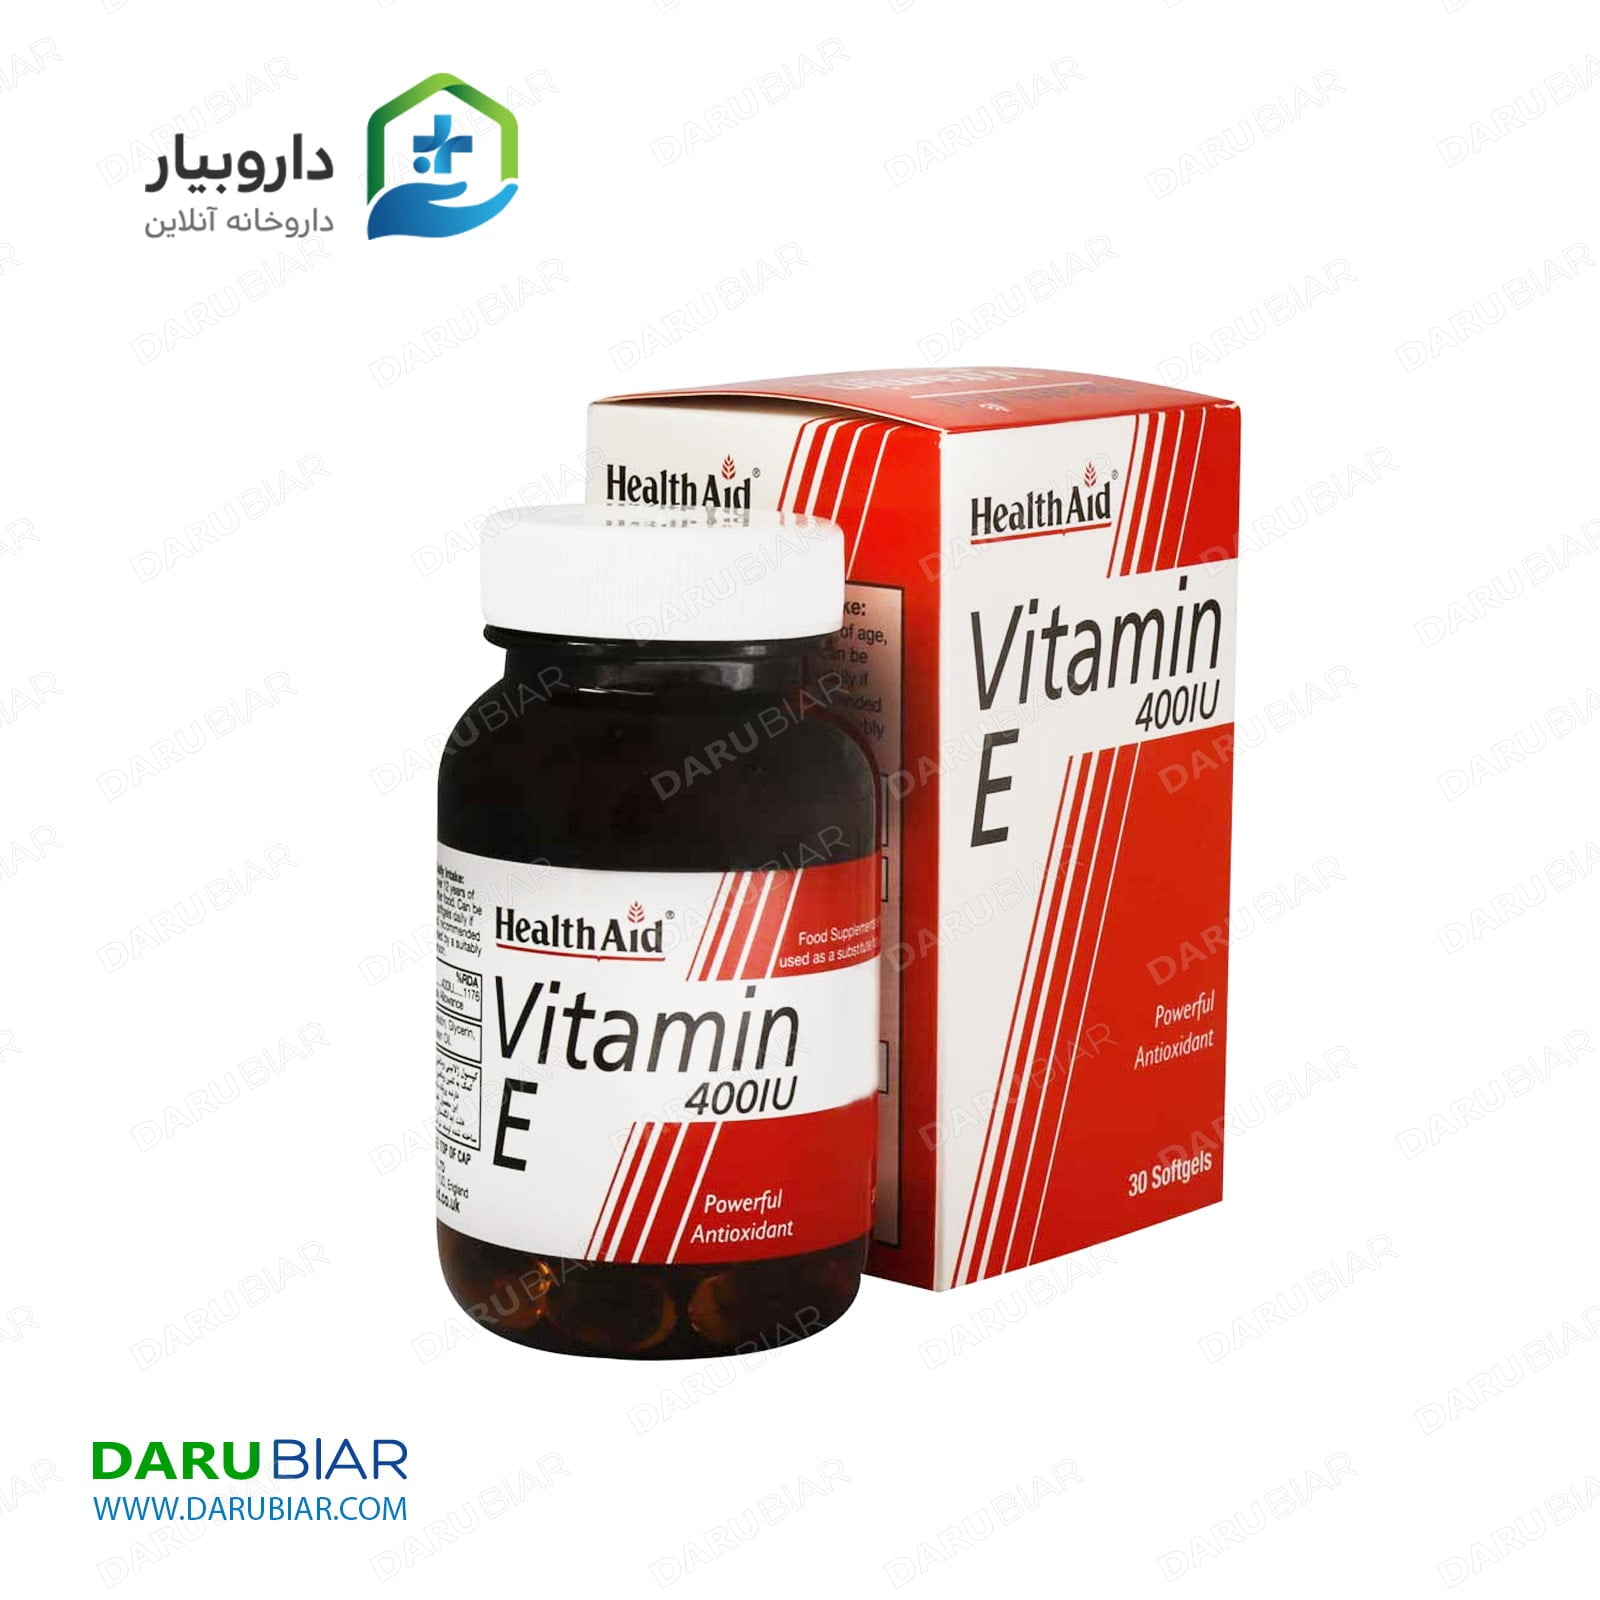 سافت ژل ویتامین E 400 واحد هلث اید Health Aid Vitamin E 400 IU